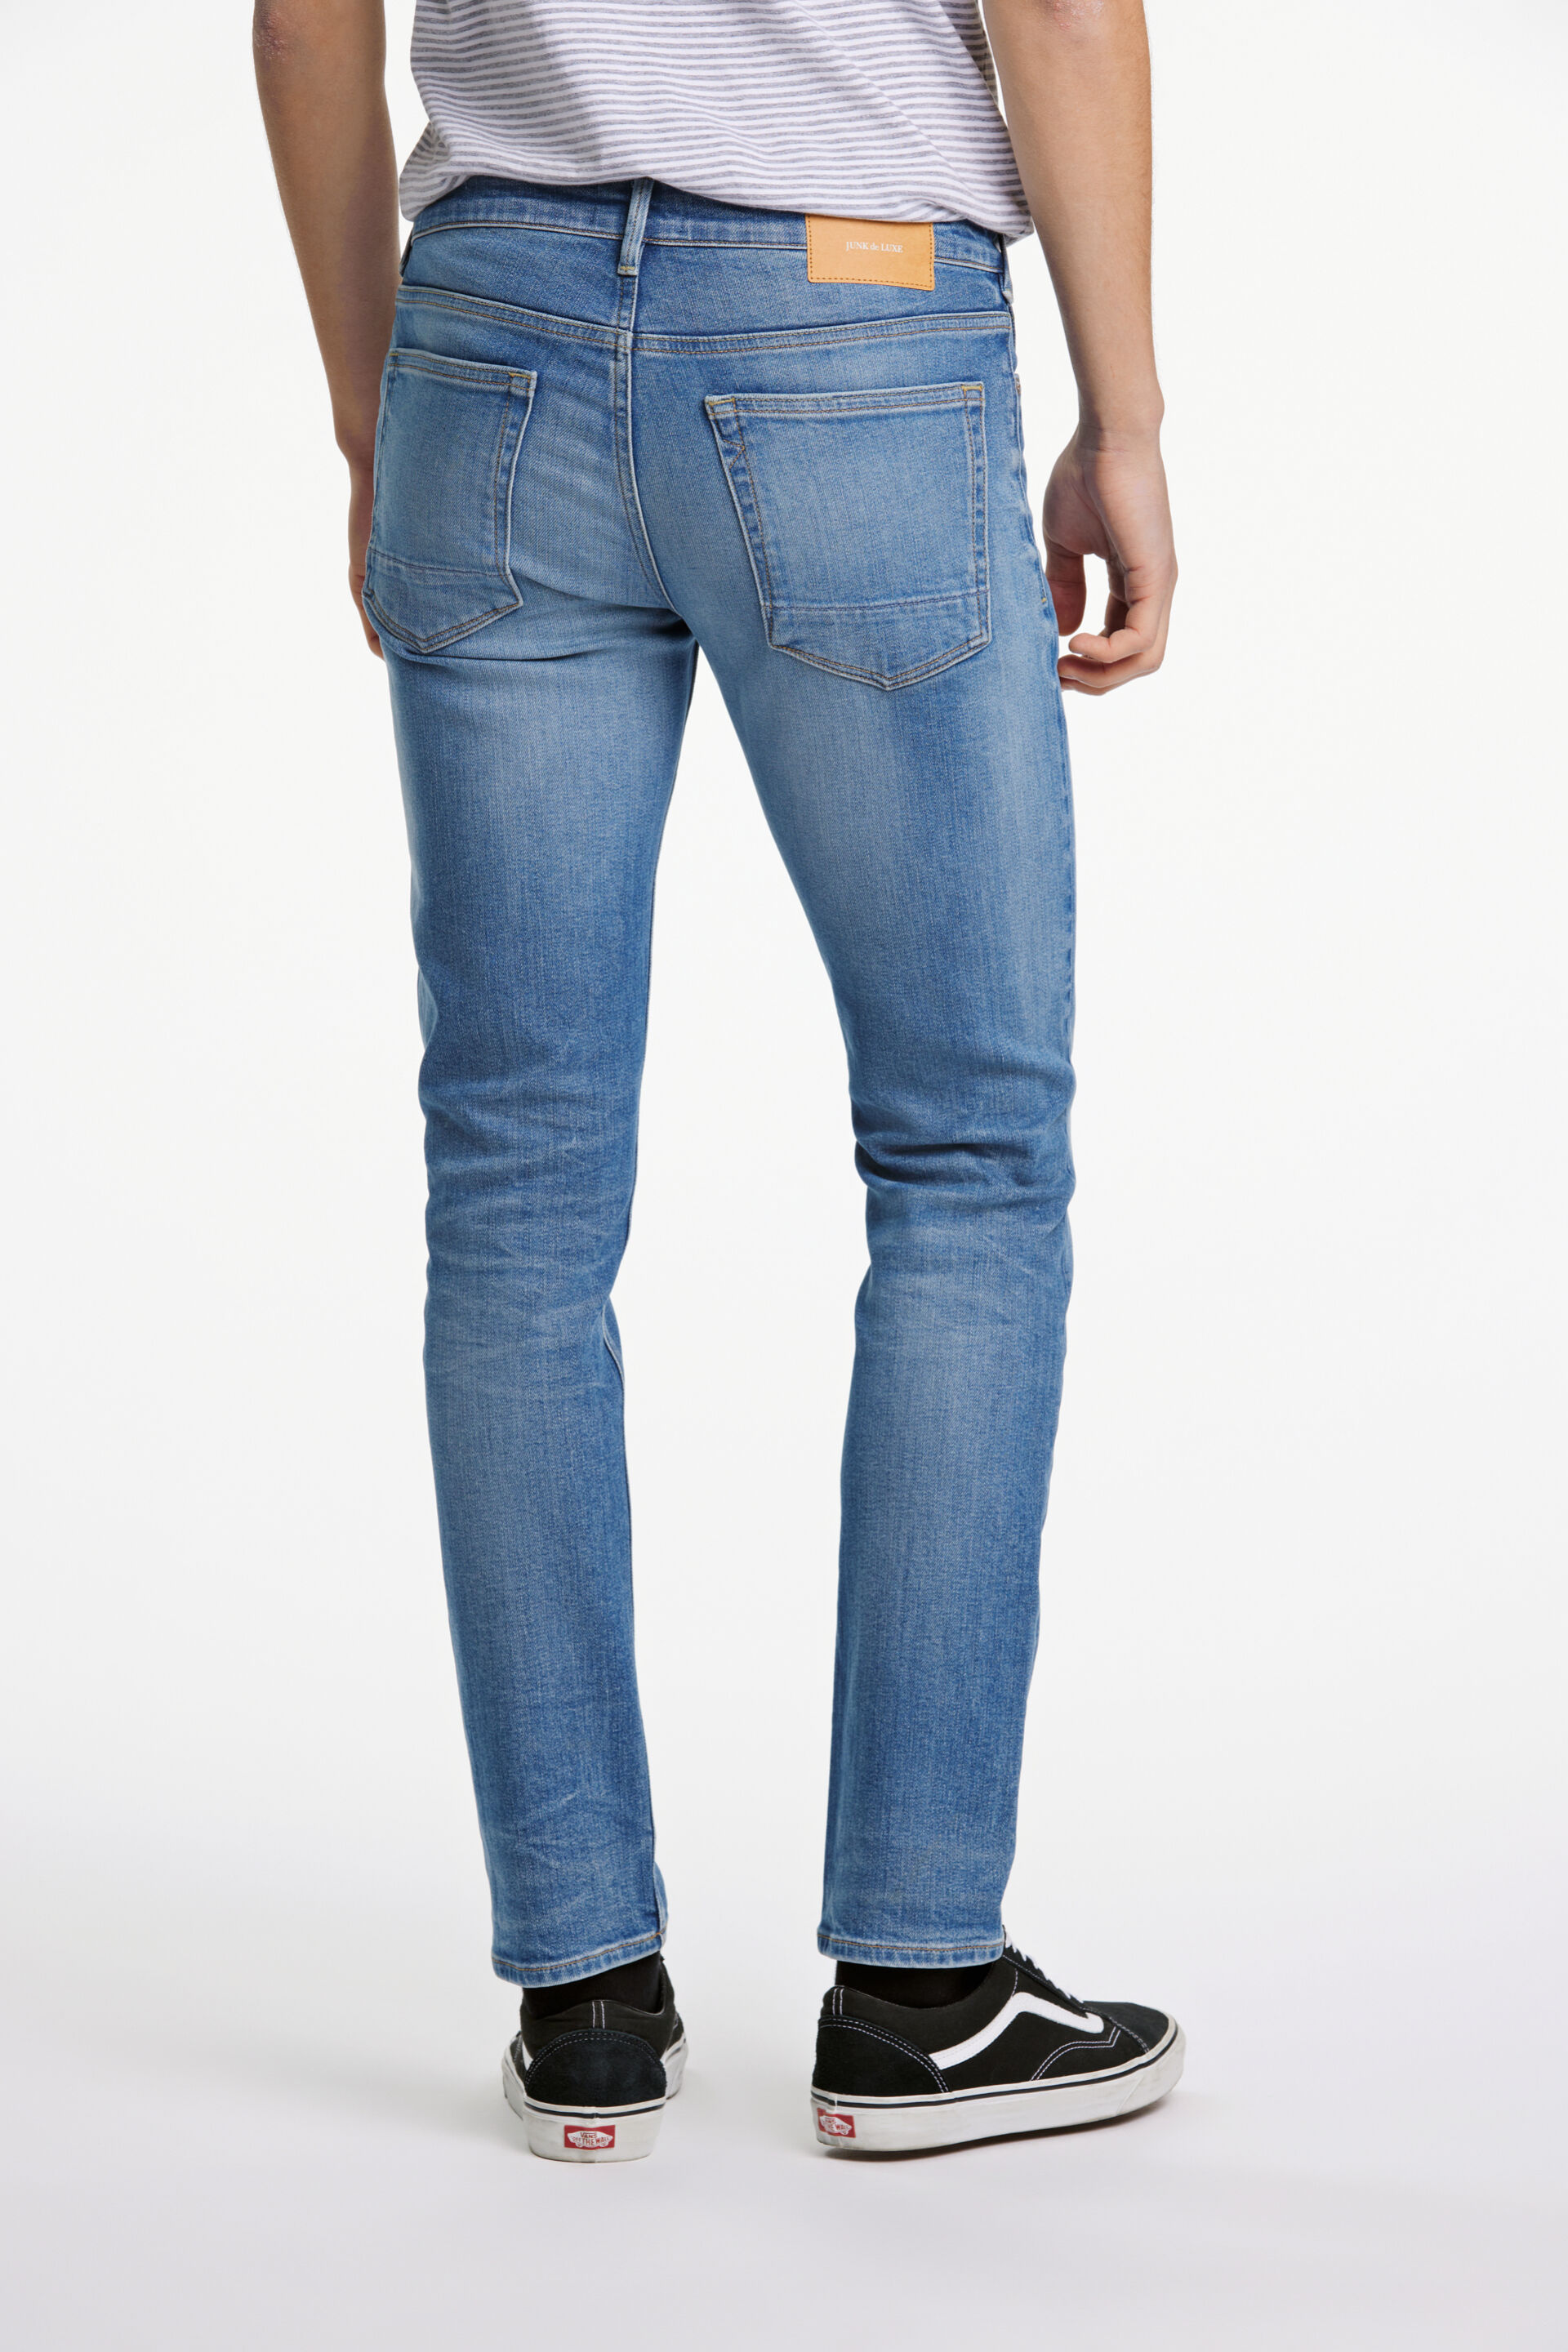 Junk de Luxe  Jeans 60-022016